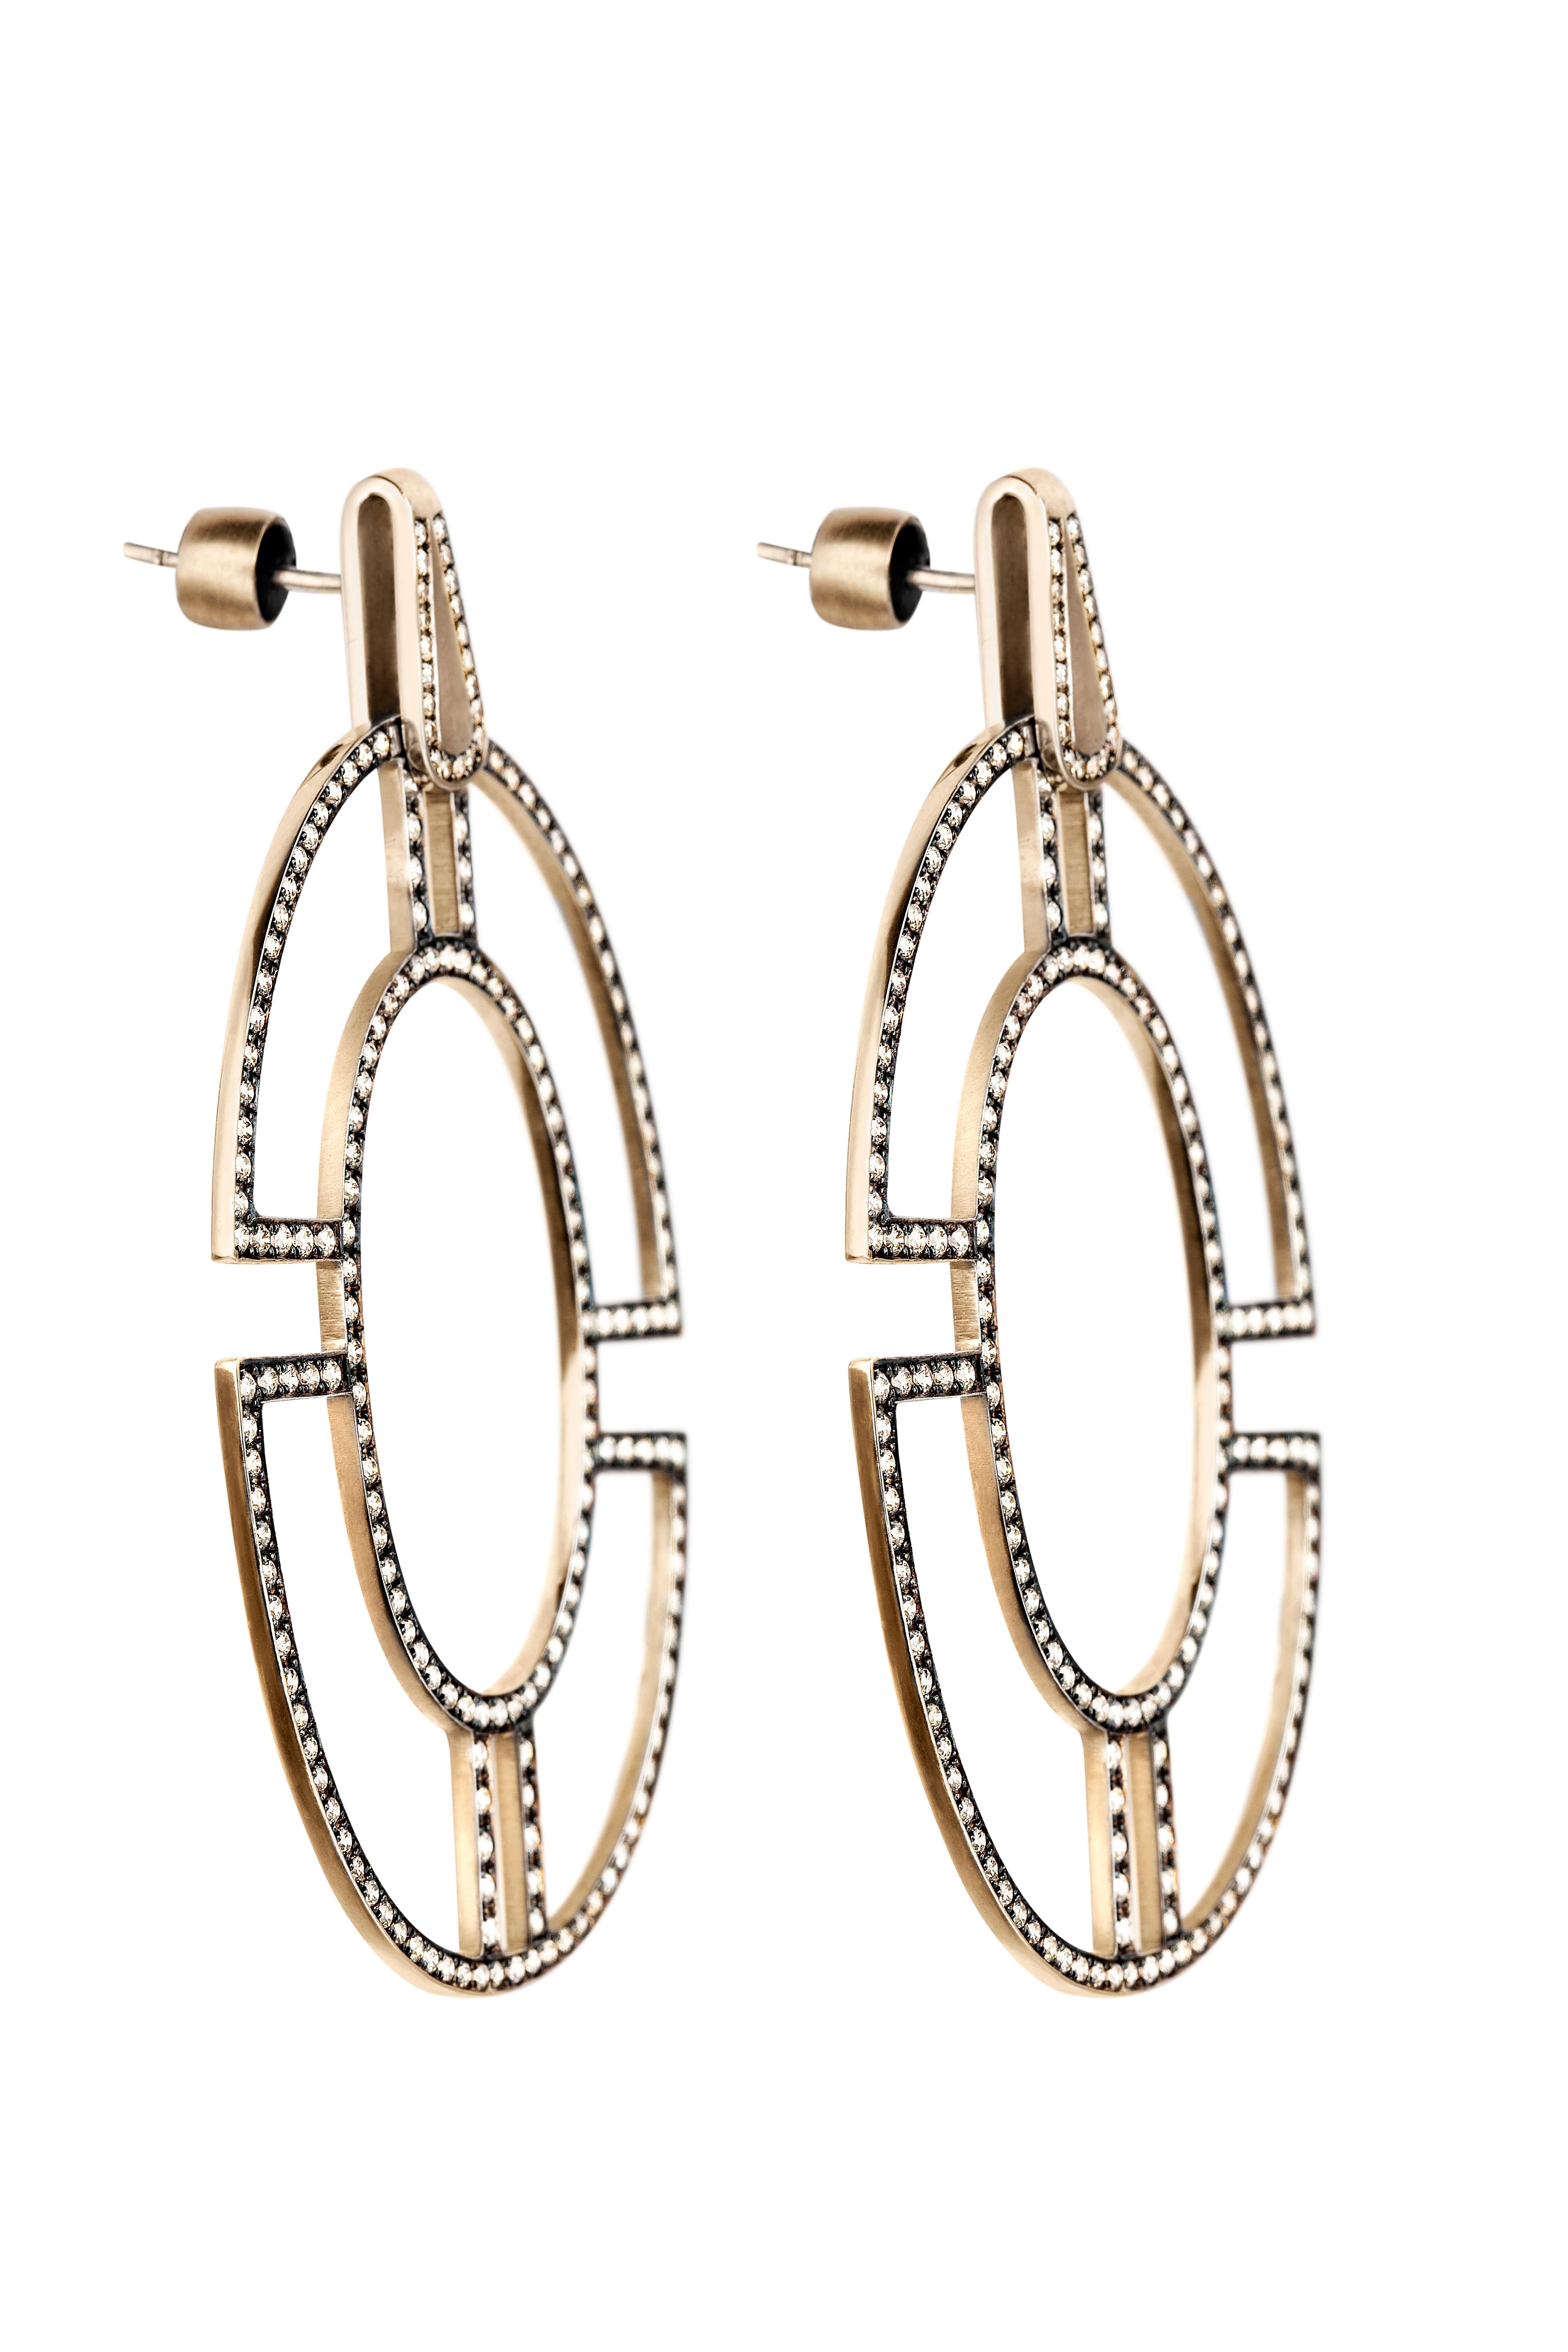 Diese Ohrringe aus der BYZANTIUM-Kollektion von POLINA ELLIS sind handgefertigt aus 18 Karat rohem Weißgold mit 3,16 Karat champagnerfarbenen Diamanten im Brillantschliff.
Länge: 6,20cm
Breite: 3,90cm